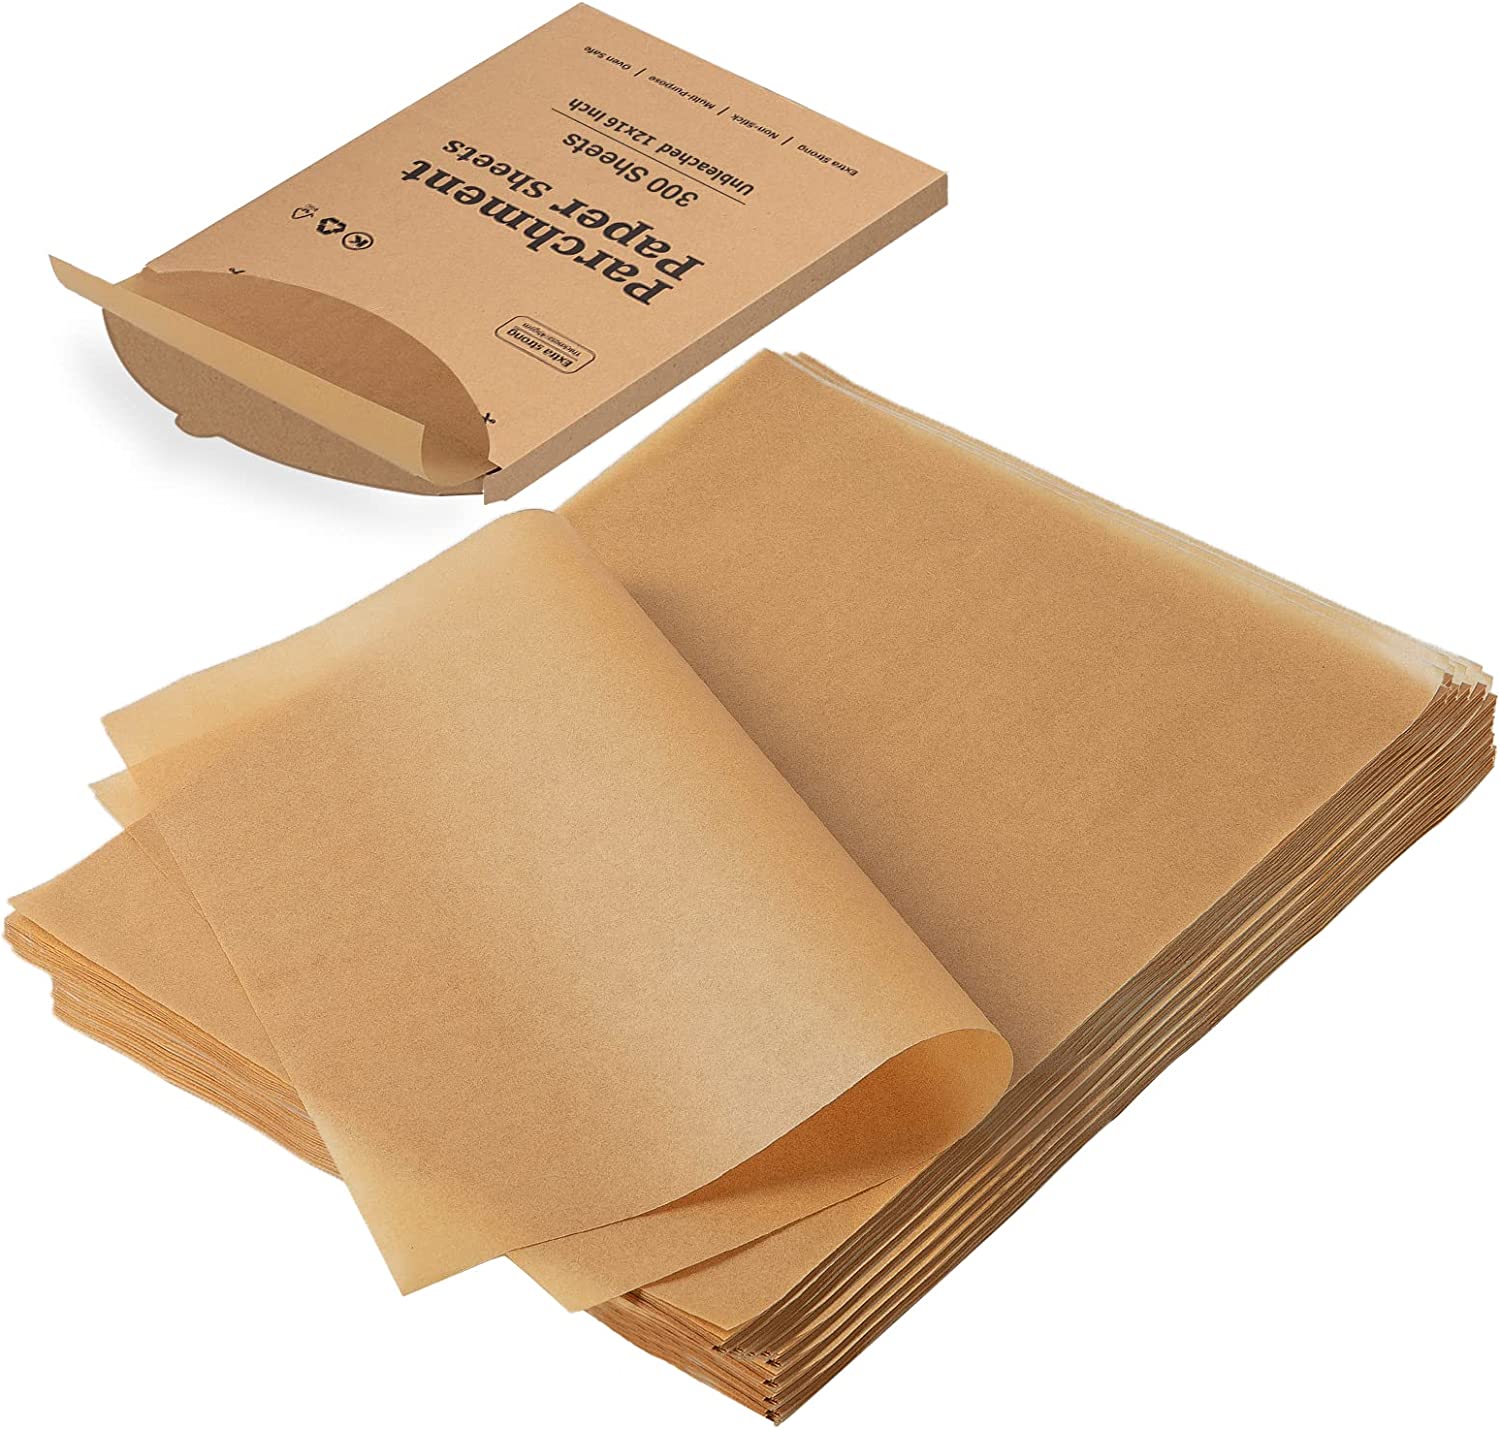 Baking Parchment Paper - Baking Parchment Paper